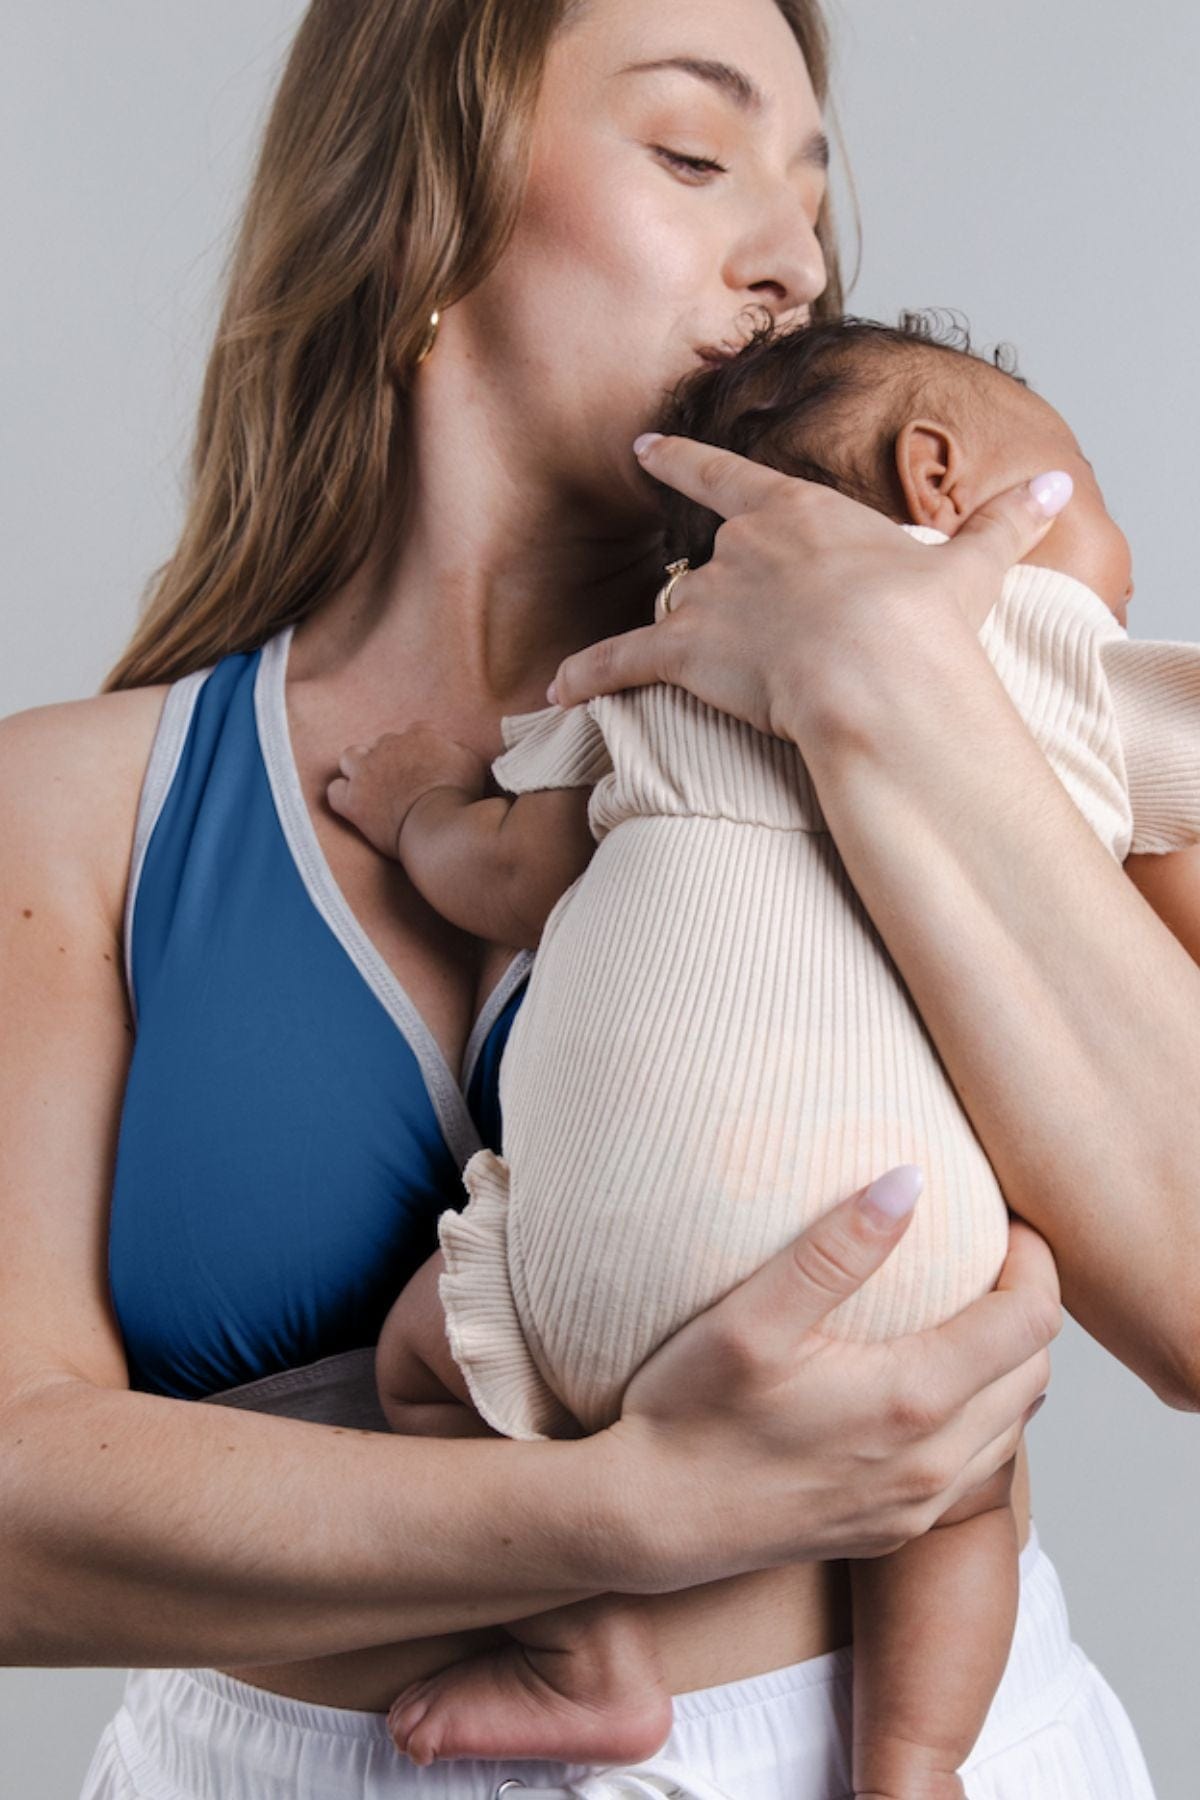 Enjoy Your Breastfeeding by Choosing a Comfortable Feeding Bra